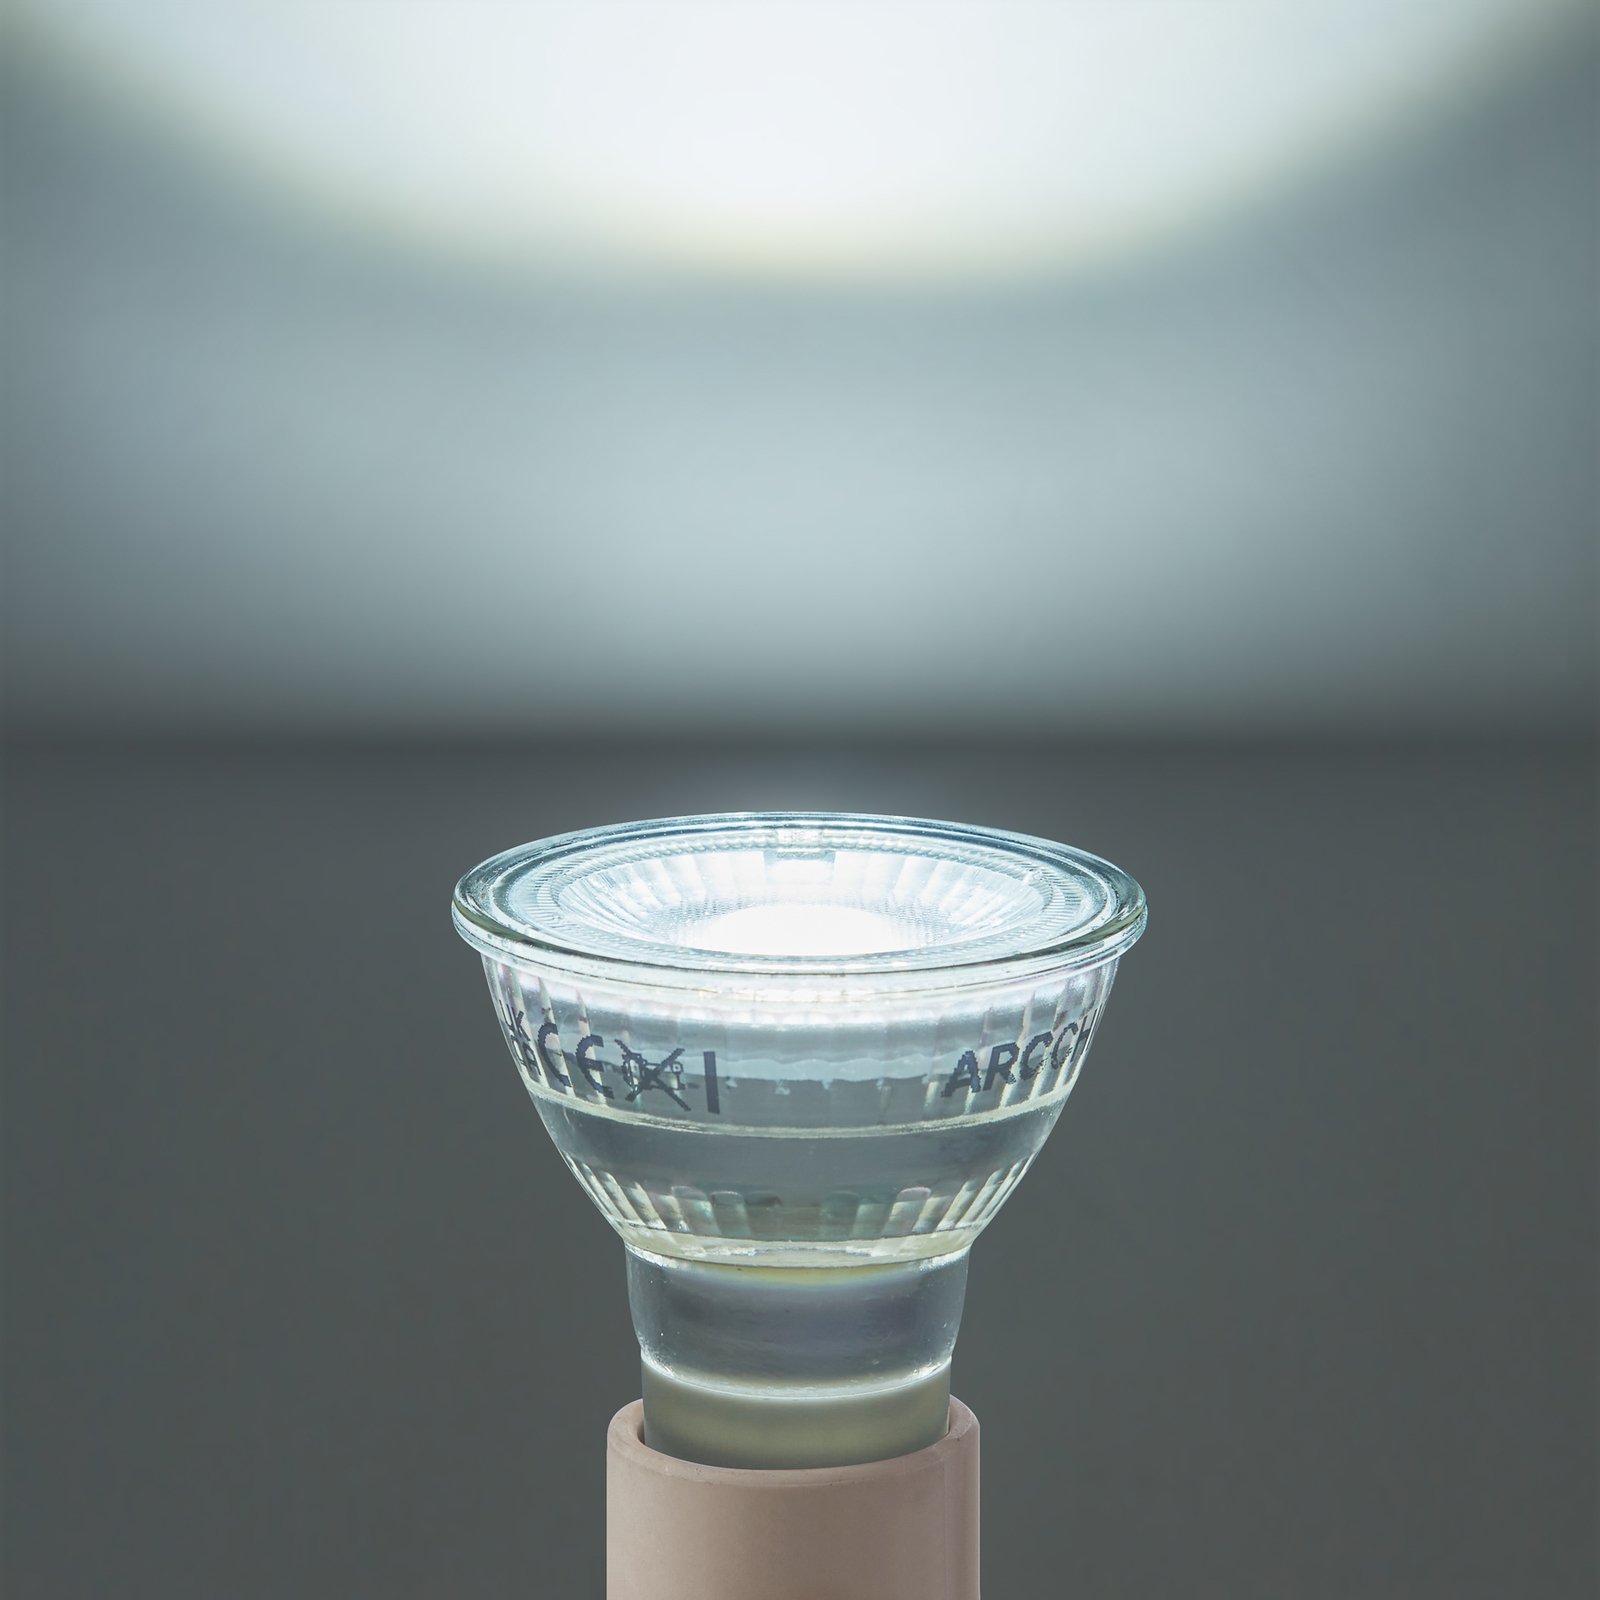 Arcchio LED крушка GU10 2,5W 6500K 450lm комплект от 10 стъкла